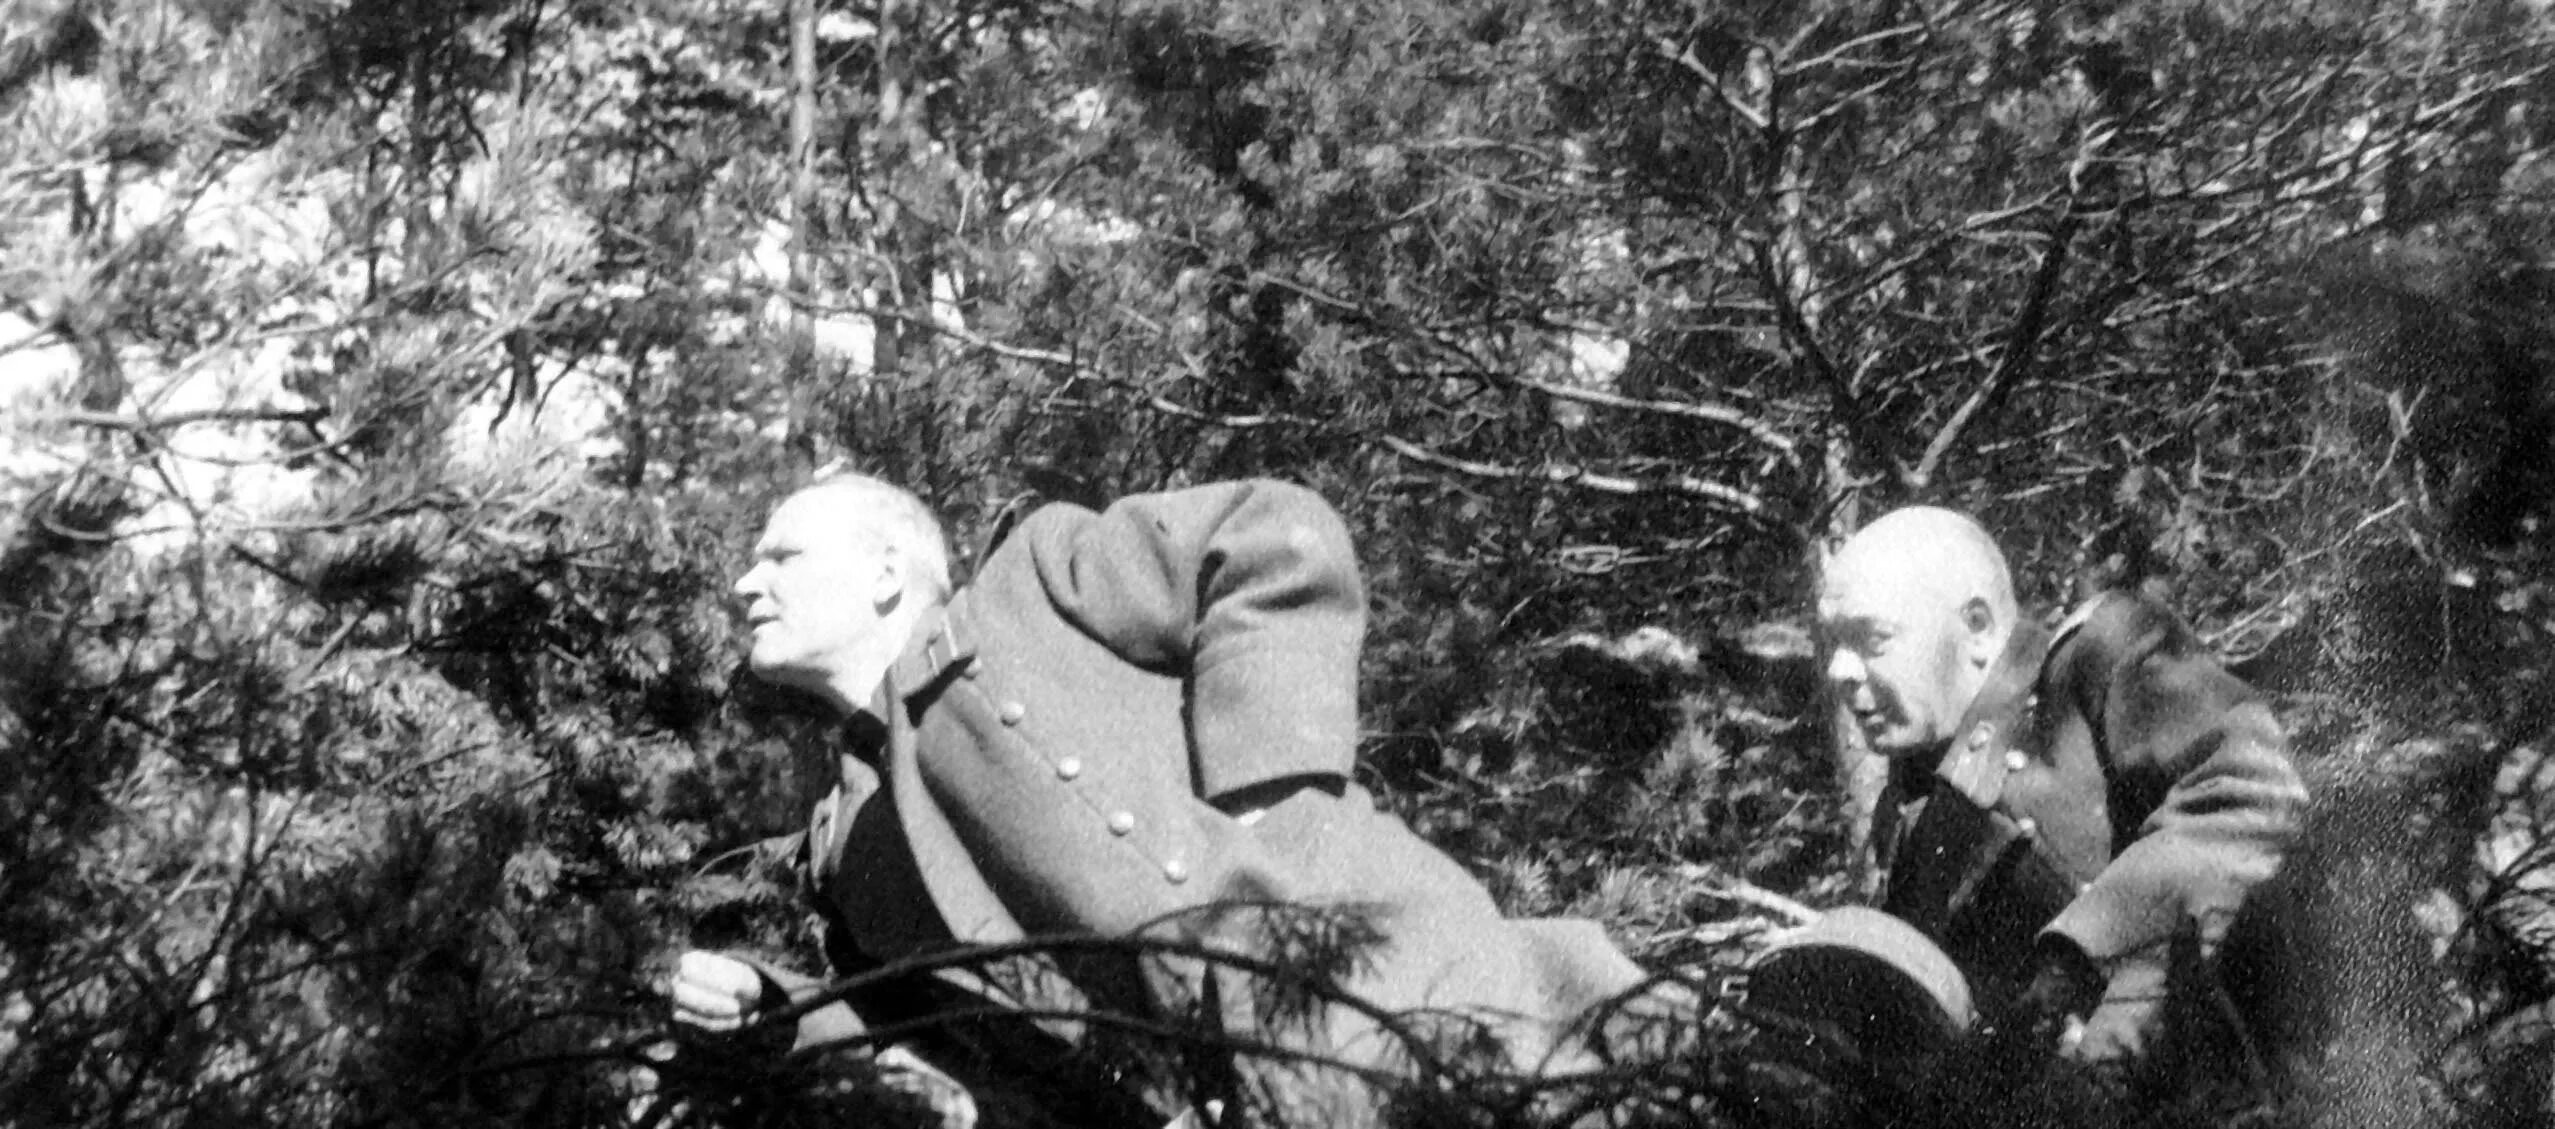 Маршал Конев 1945. Маршал Конев на фронте. Генерал полковник Конев. Командуя 1 м украинским фронтом